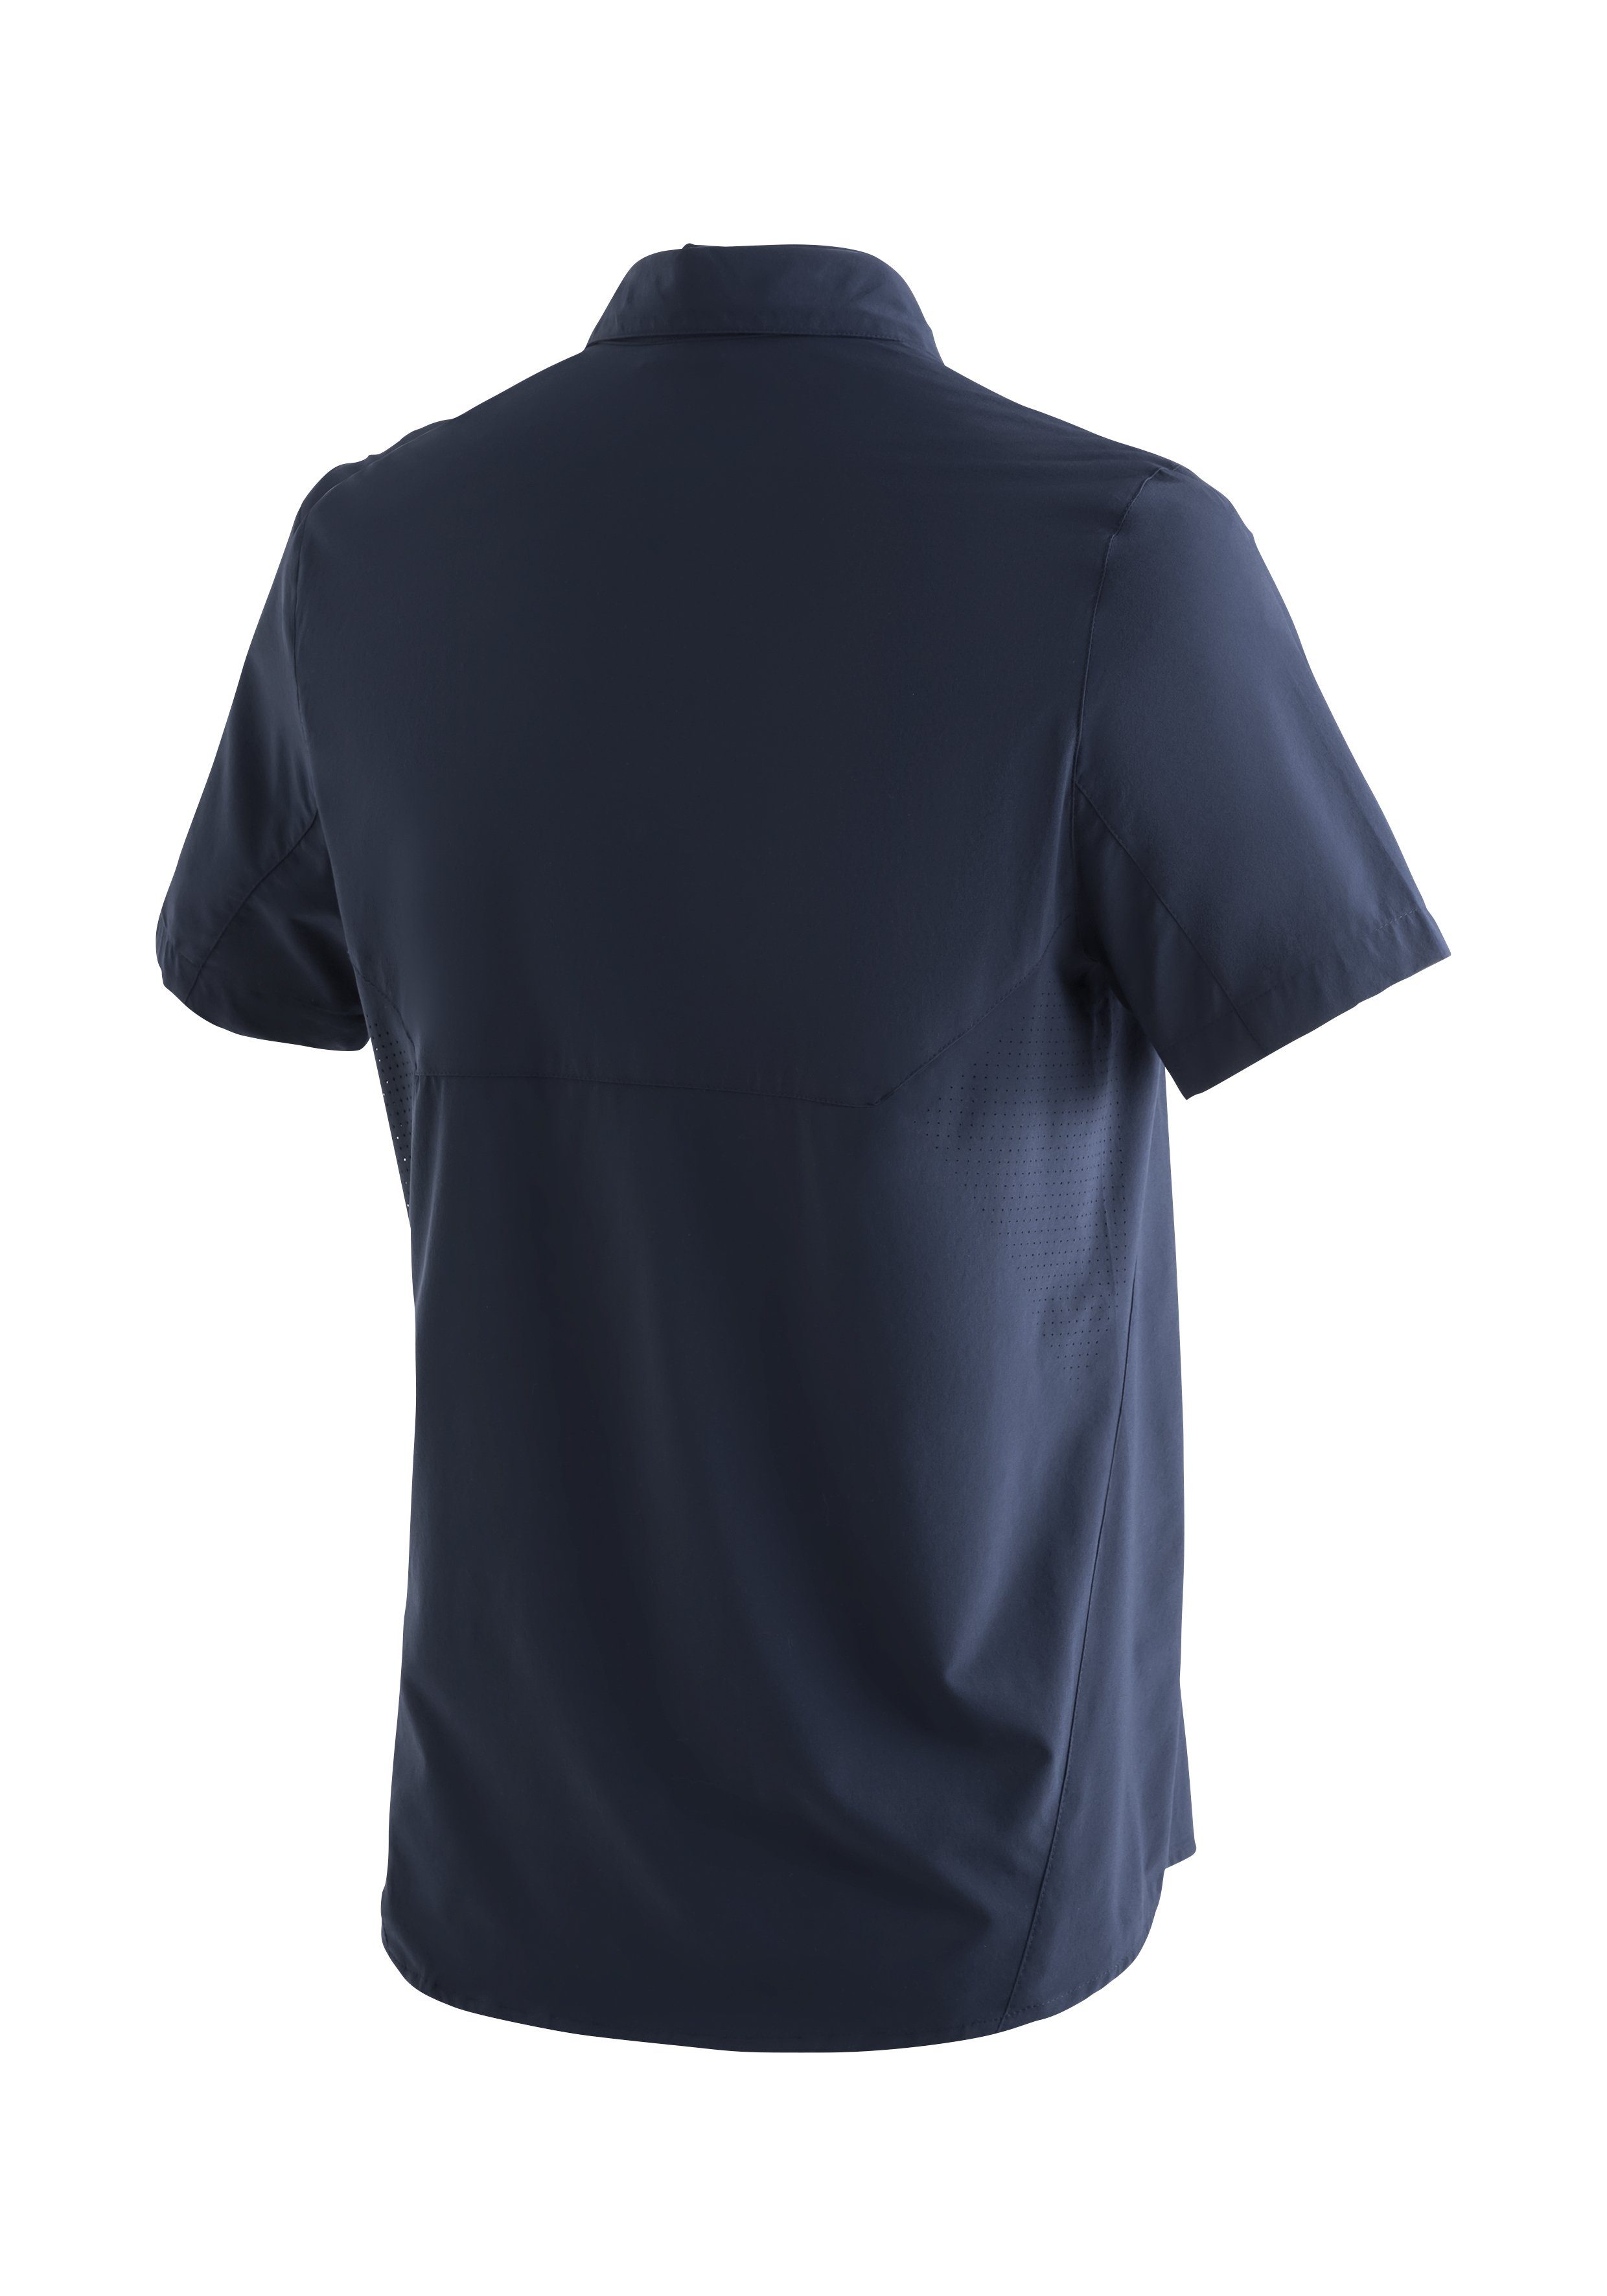 Sonnenkragen Sports MS/S elastisches dunkelblau mit Sinnes Leichtes, Trekkinghemd Tec Maier Funktionshemd